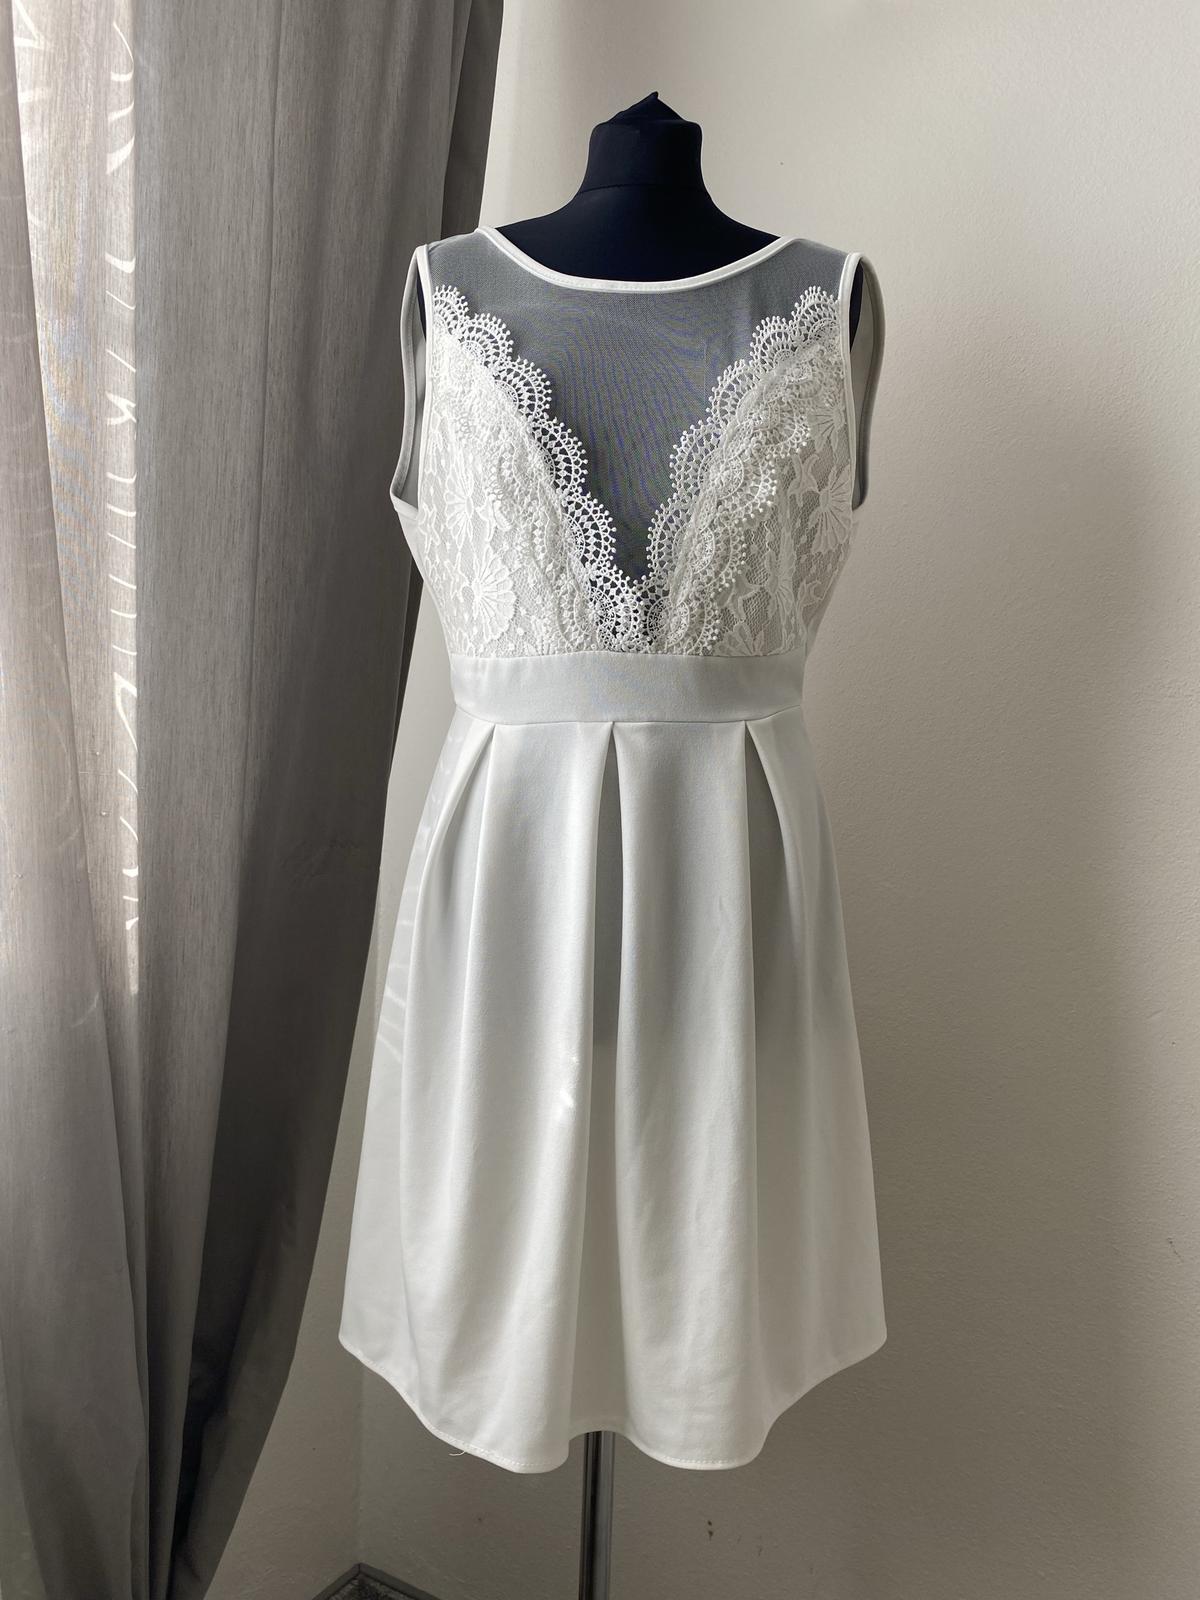 Bílé krajkové šaty - Obrázek č. 1